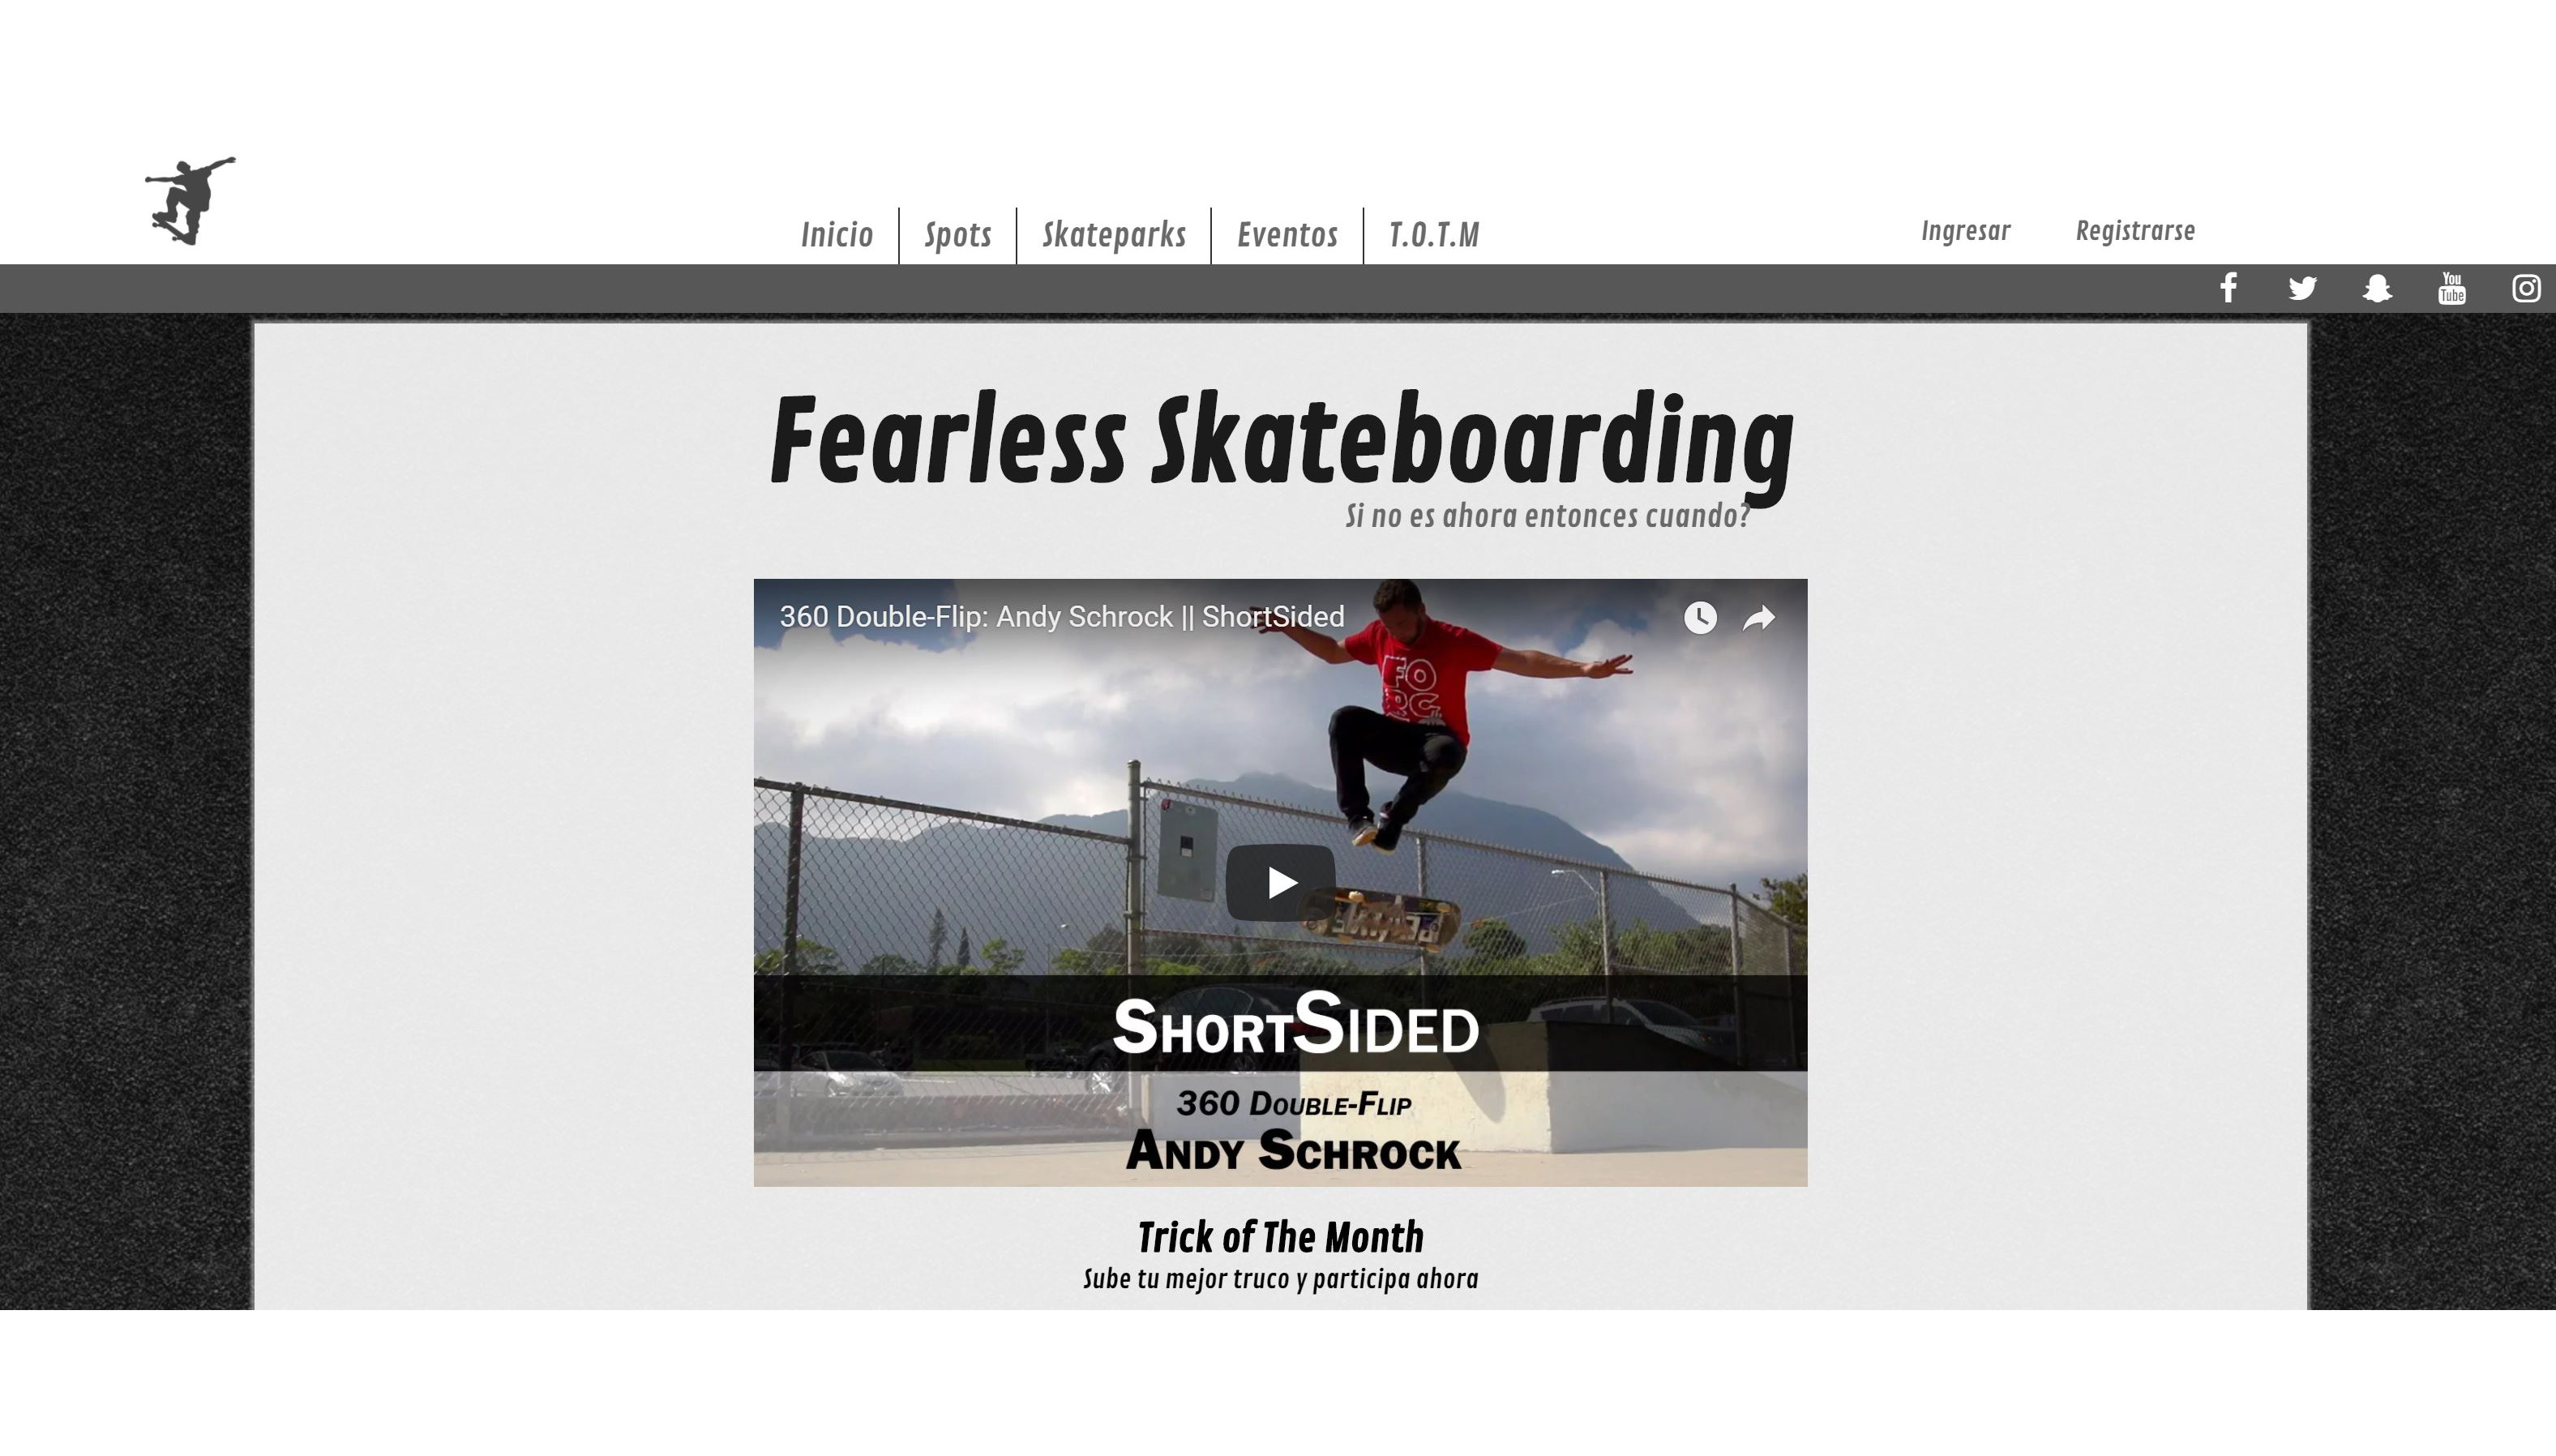 Fearless Skateboardig